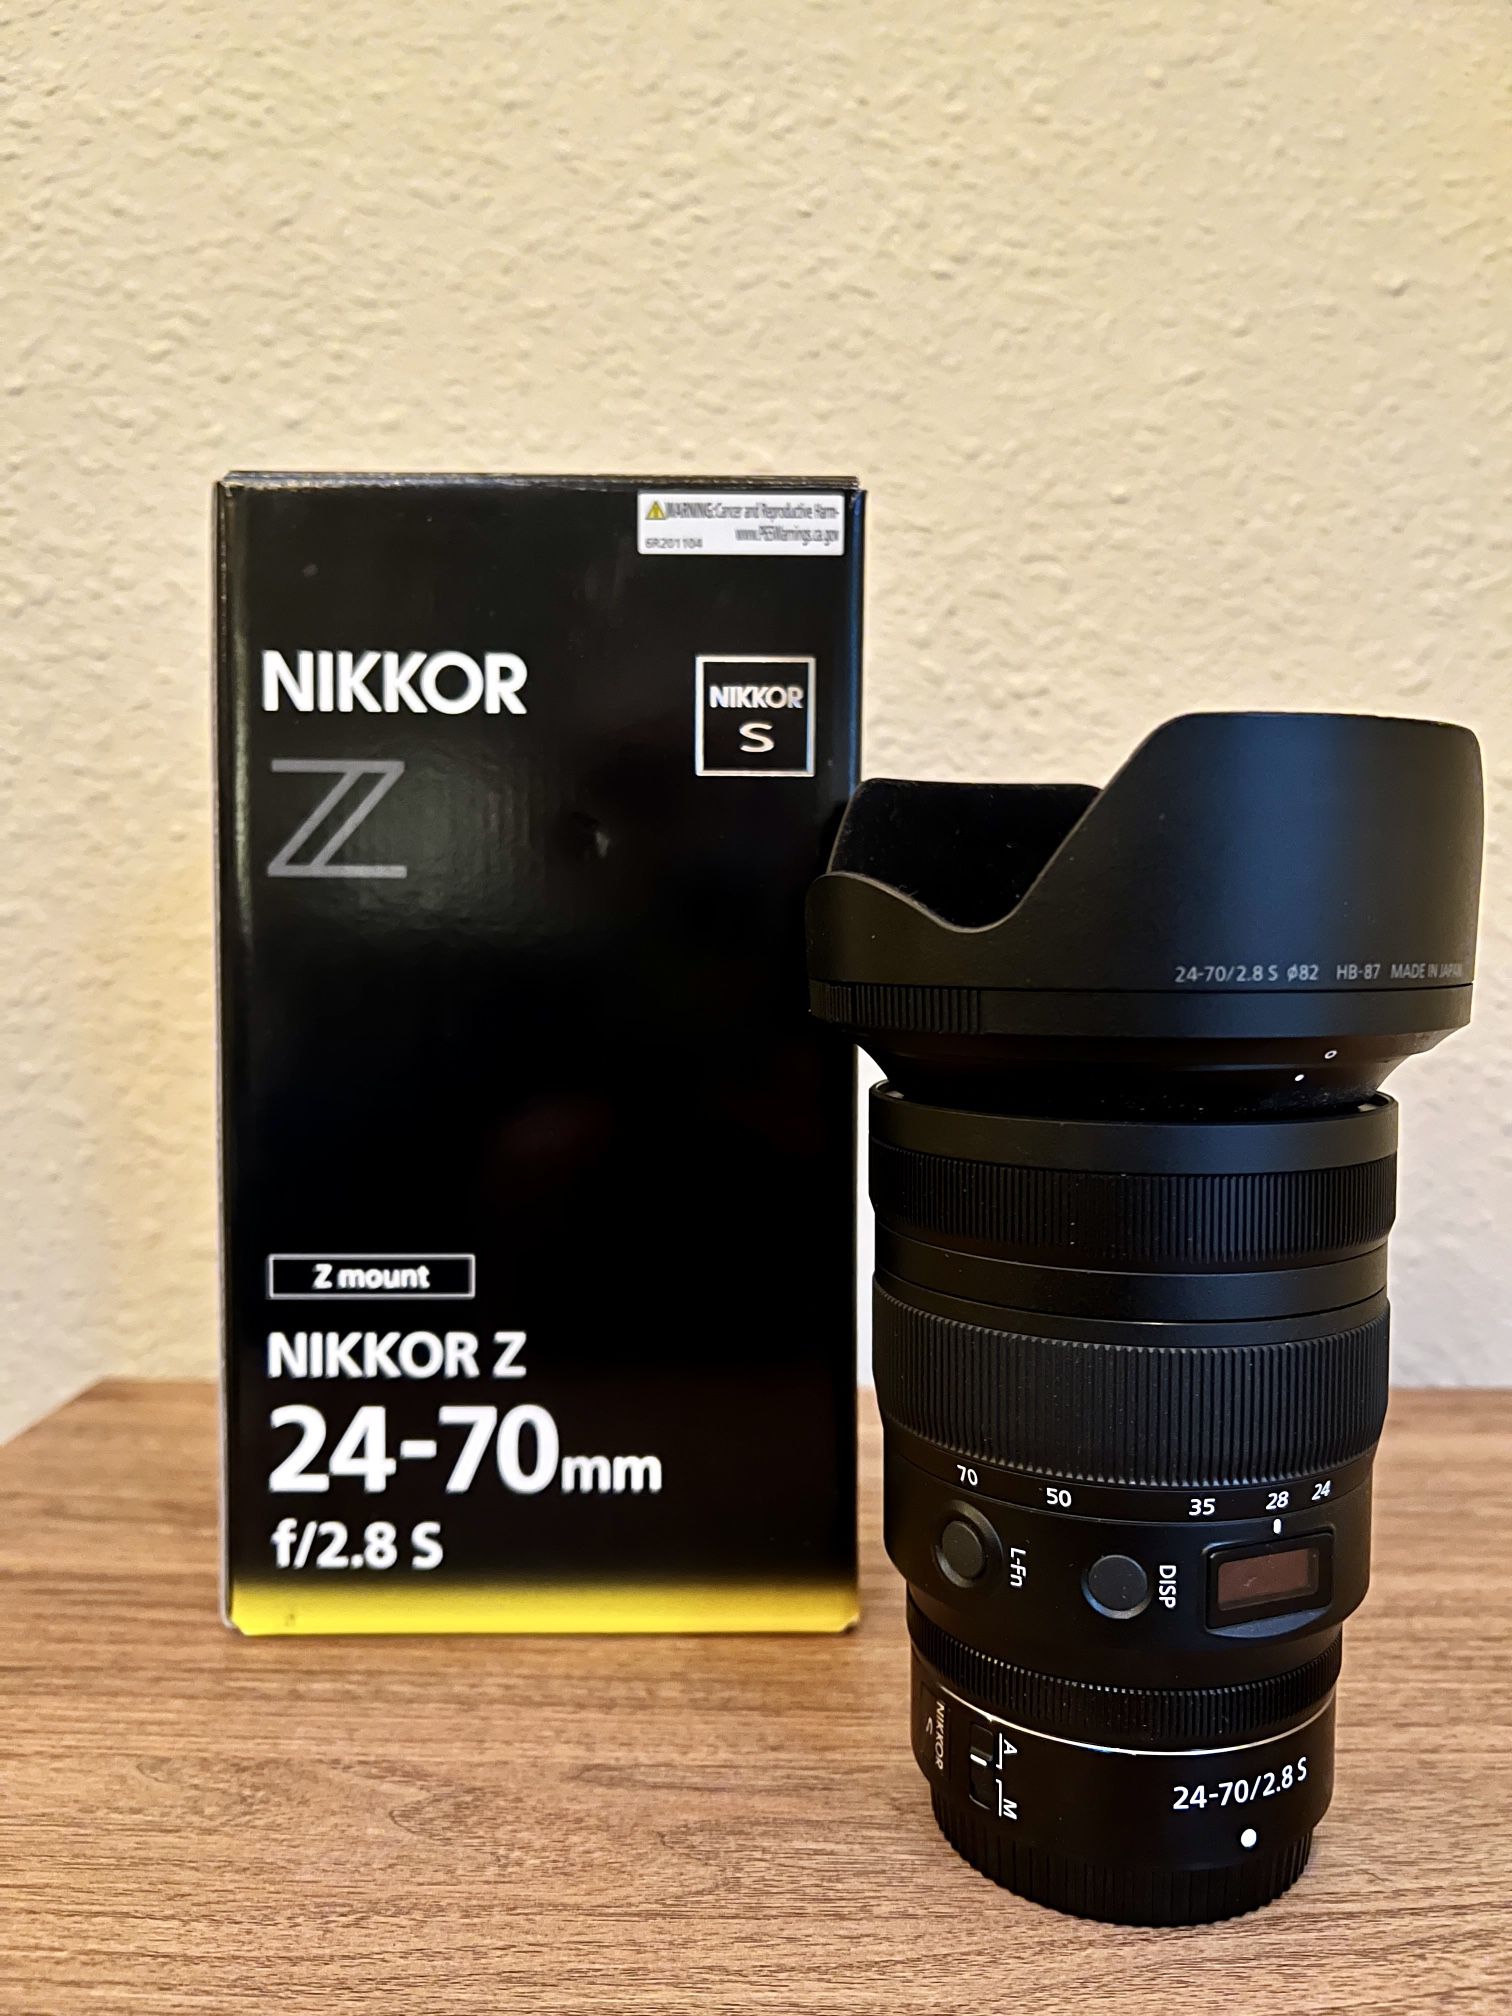 Nikkor Z 24-70mm F/2.8s Lens